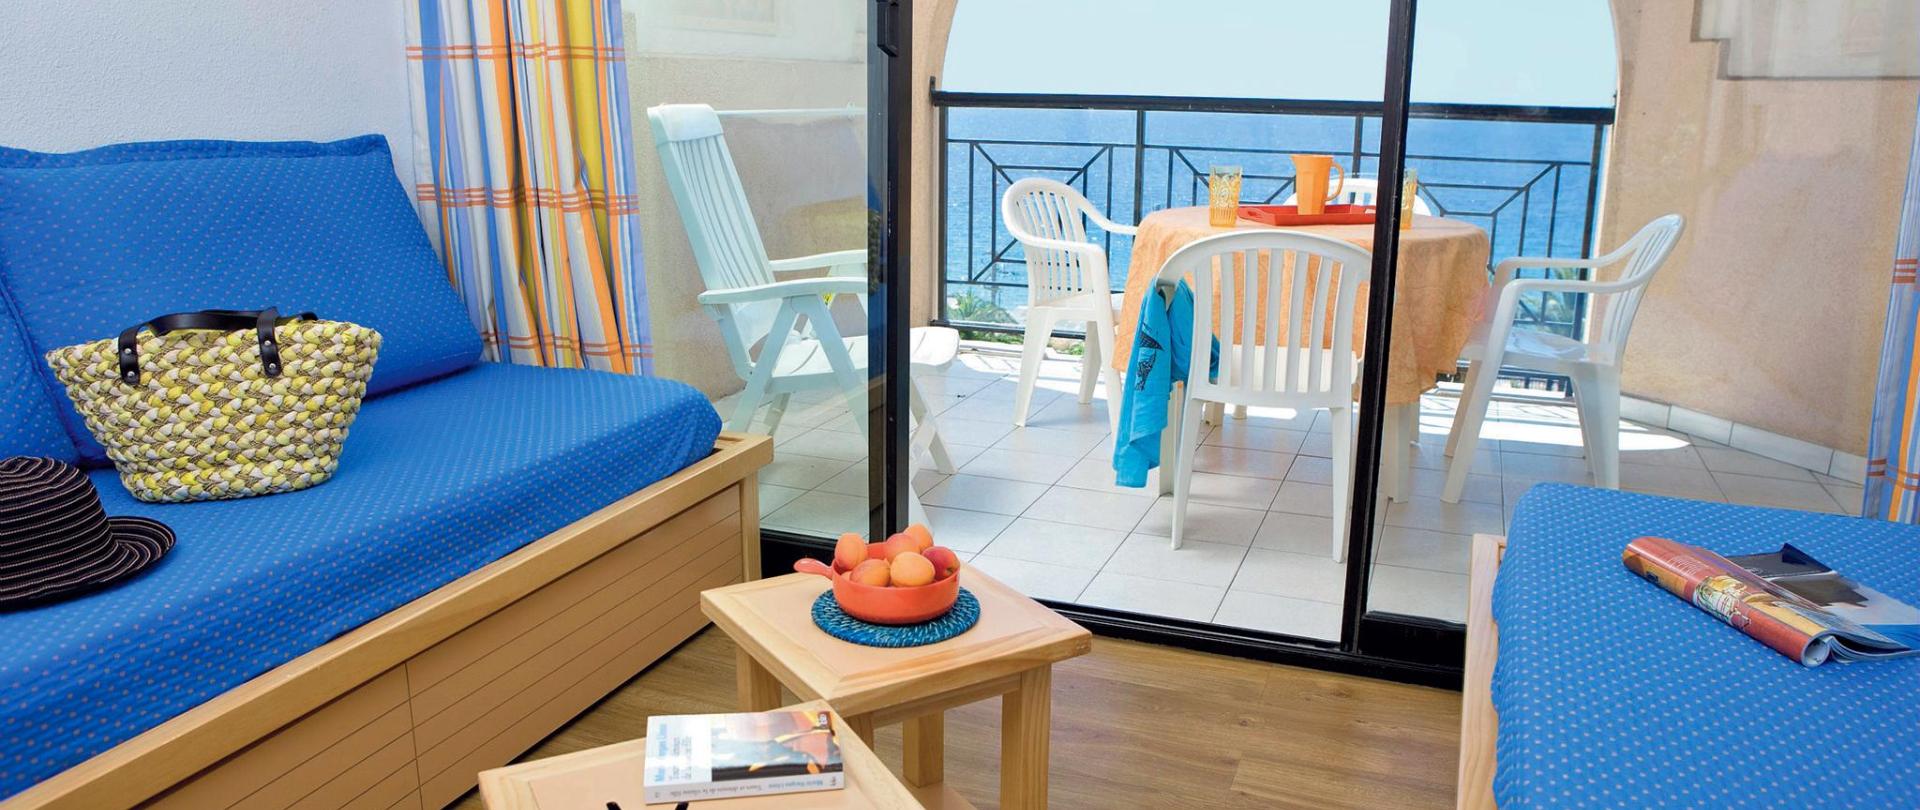 Hotel-La-Palme-D'Azur-Cannes-Verrerie.jpg